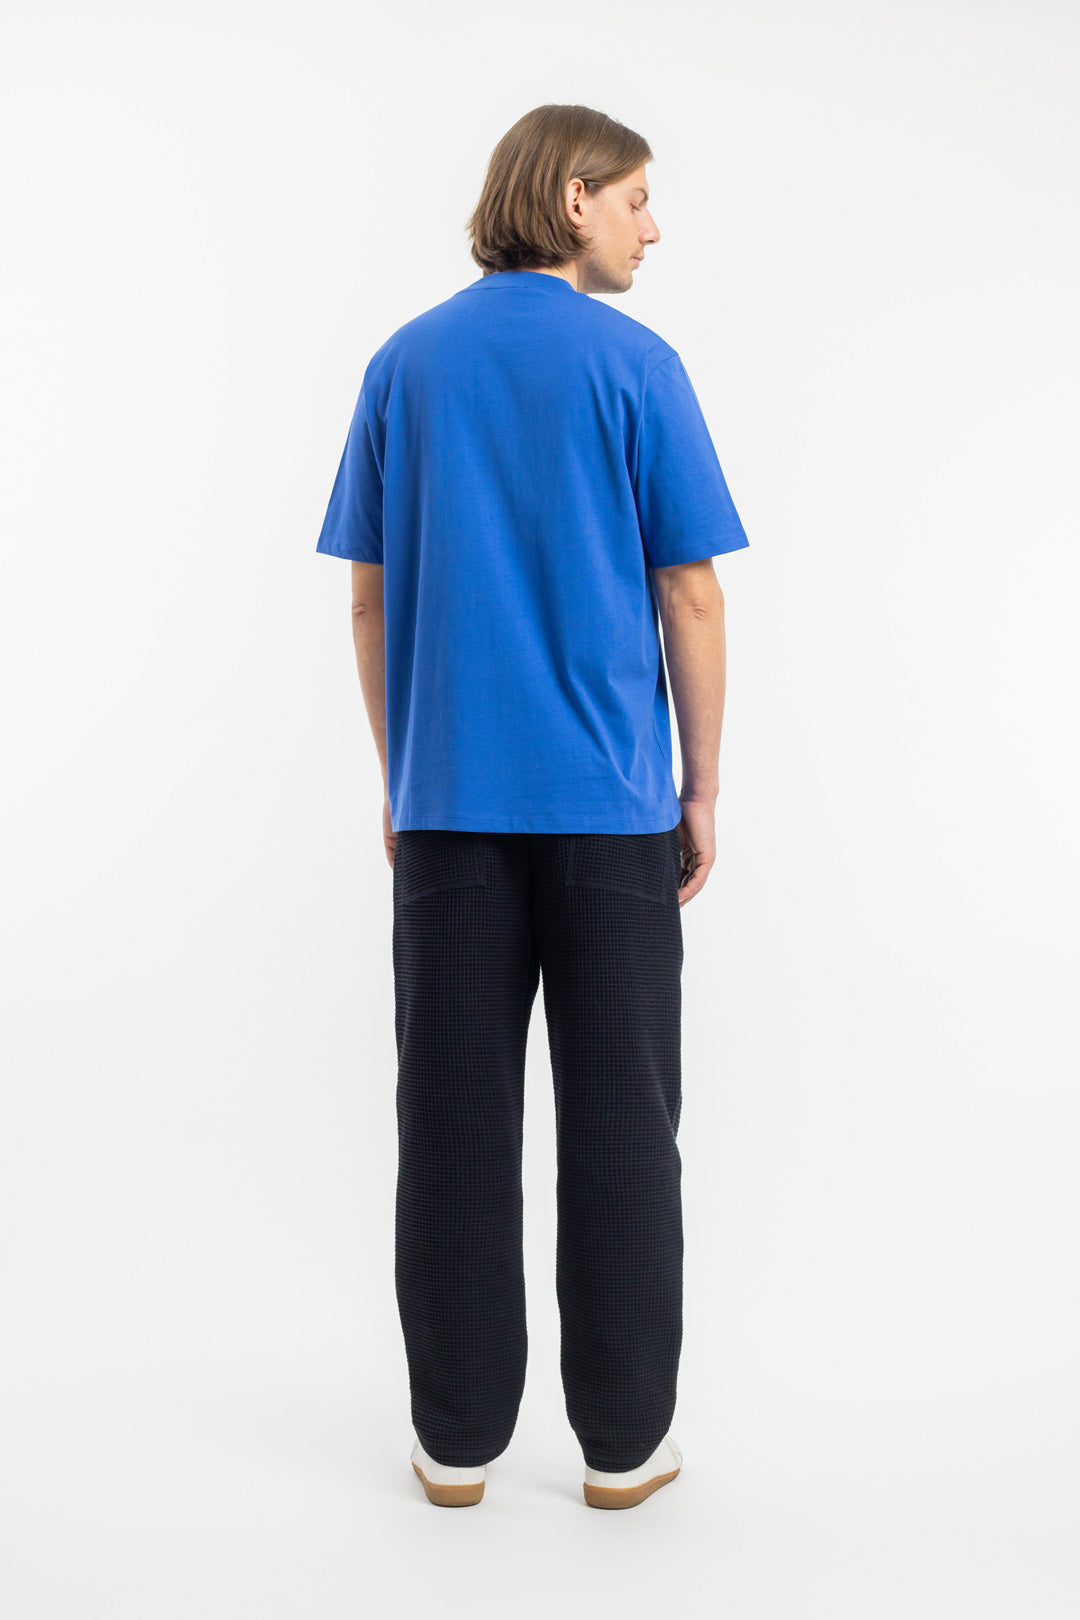 Blaues T-Shirt mit breitem Kragen aus 100% Bio-Baumwolle von Rotholz